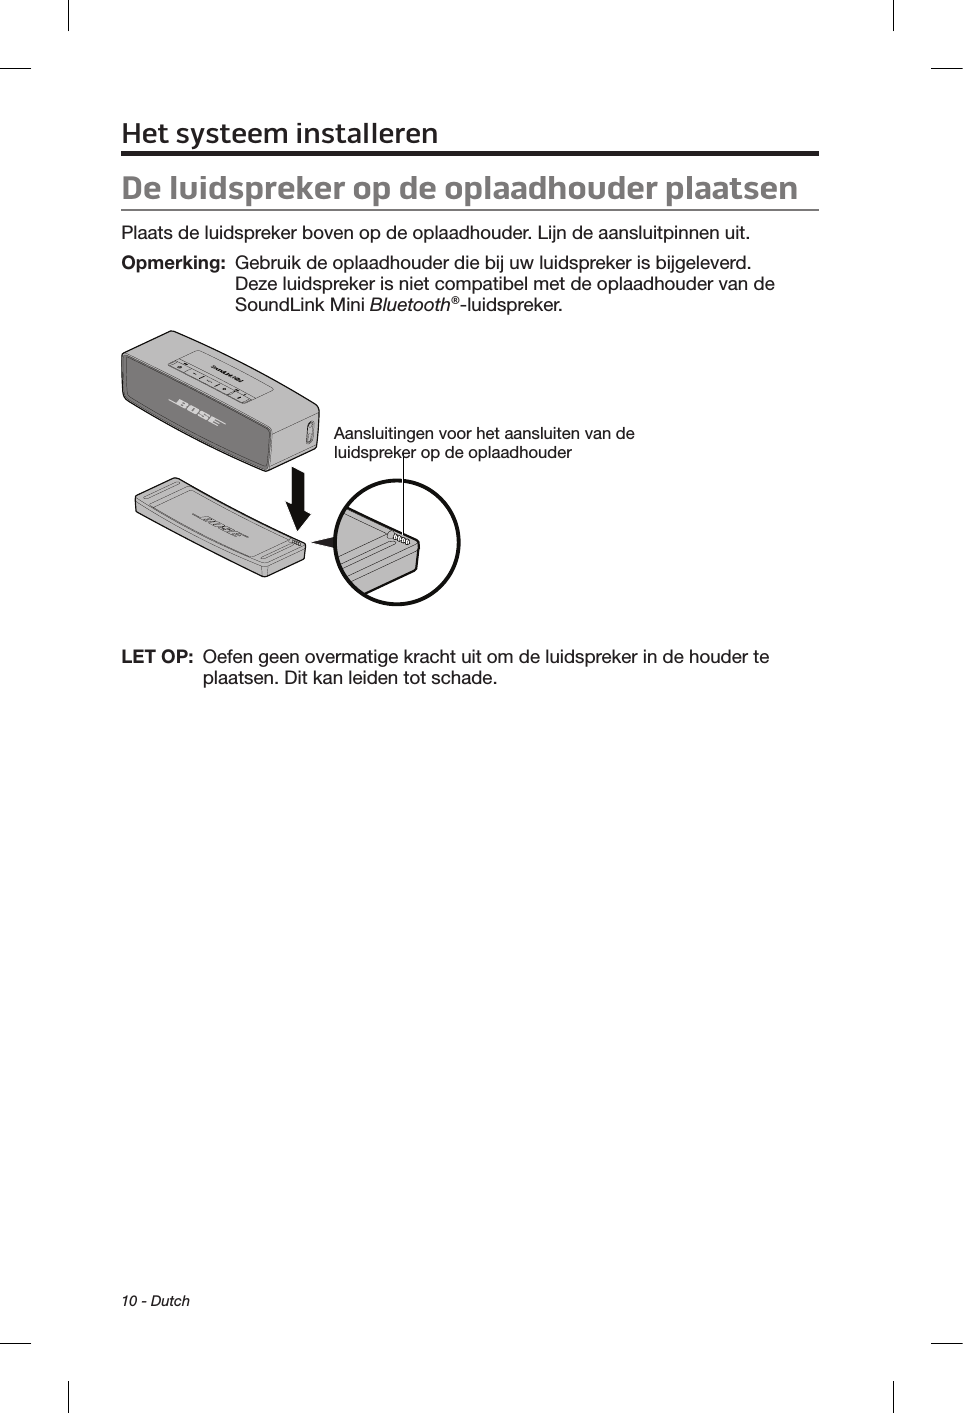 10 - DutchDe luidspreker op de oplaadhouder plaatsenPlaats de luidspreker boven op de oplaadhouder. Lijn de aansluitpinnen uit.Opmerking:   Gebruik de oplaadhouder die bij uw luidspreker is bijgeleverd. Deze luidspreker is niet compatibel met de oplaadhouder van de SoundLink Mini Bluetooth®-luidspreker.Aansluitingen voor het aansluiten van de luidspreker op de oplaadhouderLET OP:   Oefen geen overmatige kracht uit om de luidspreker in de houder te plaatsen. Dit kan leiden tot schade.Het systeem installeren